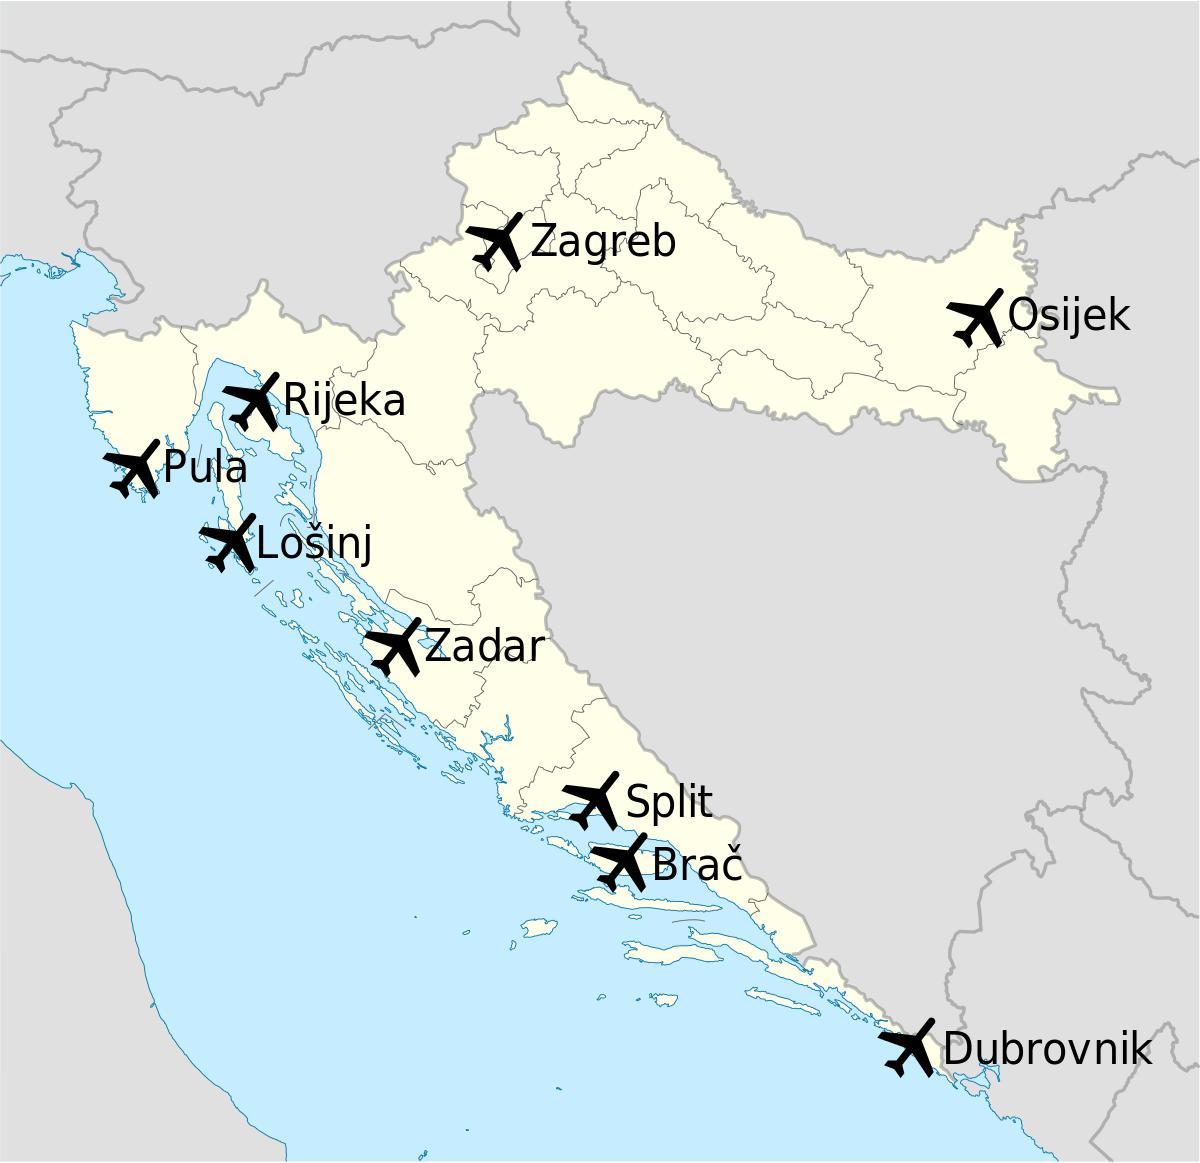 peta dari kroasia menunjukkan bandara